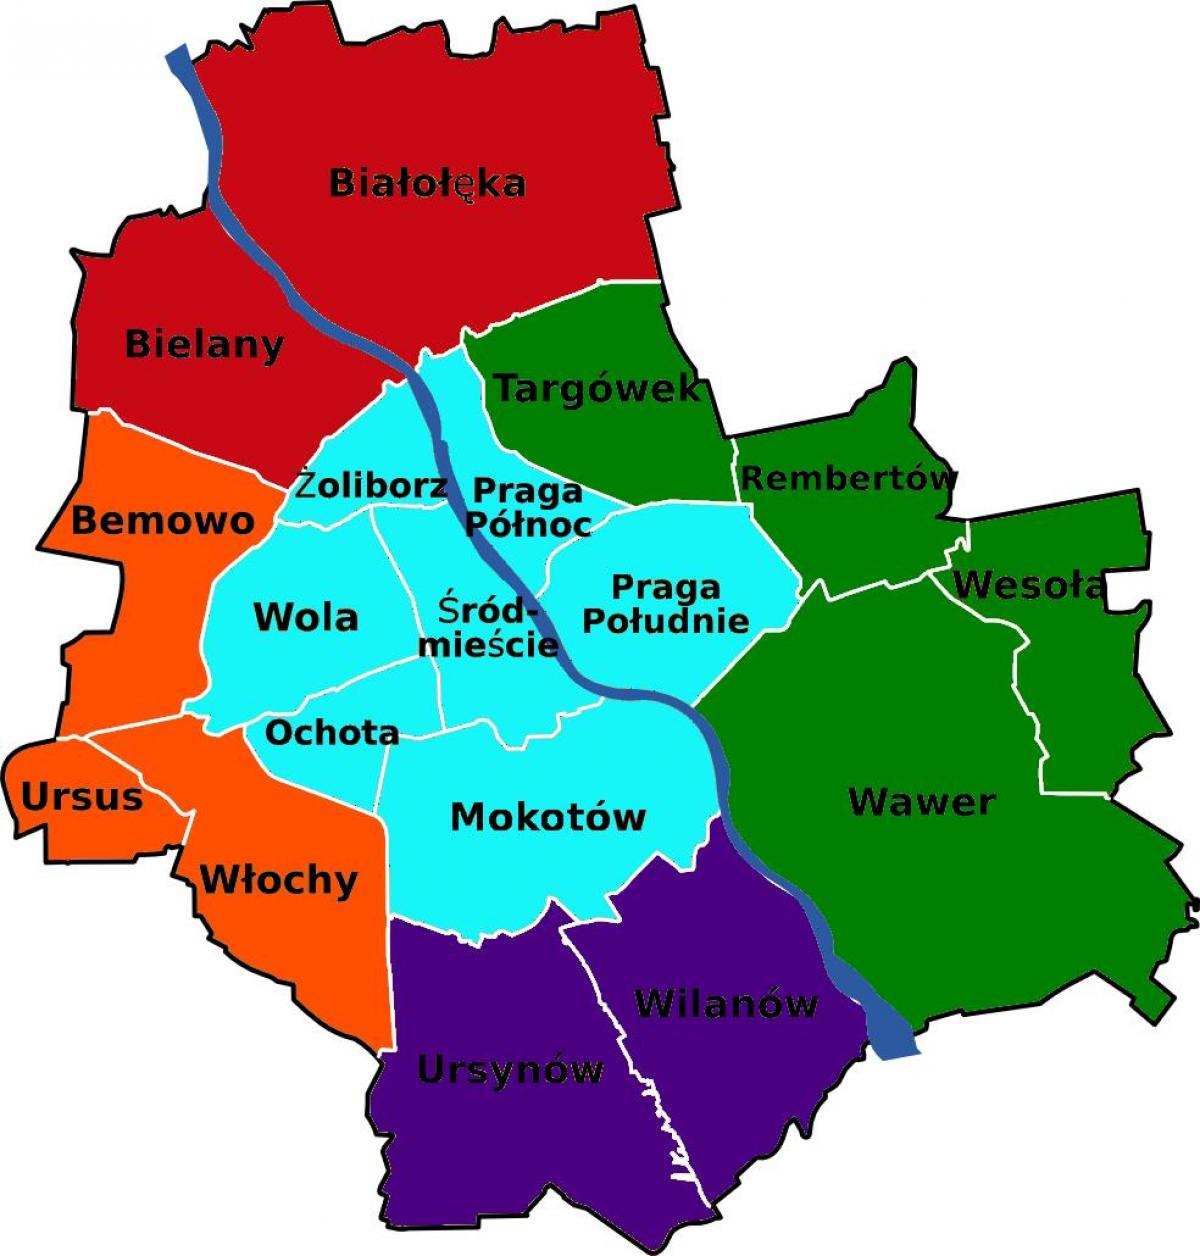 Mapa de districtes de Varsòvia 